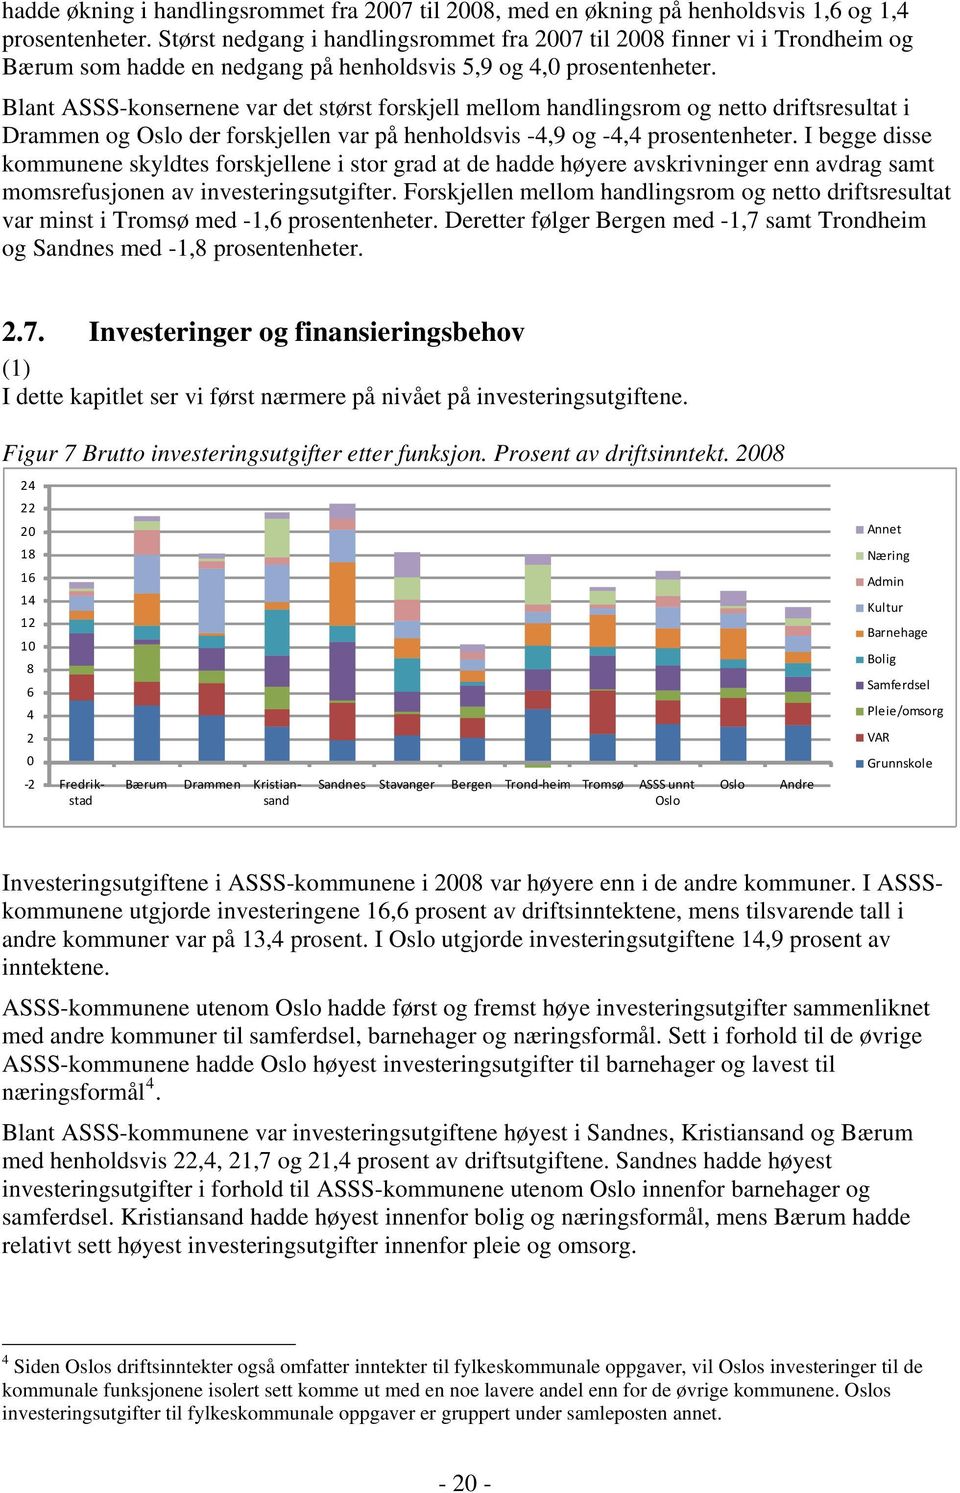 Blant ASSS-konsernene var det størst forskjell mellom handlingsrom og netto driftsresultat i Drammen og Oslo der forskjellen var på henholdsvis -4,9 og -4,4 prosentenheter.